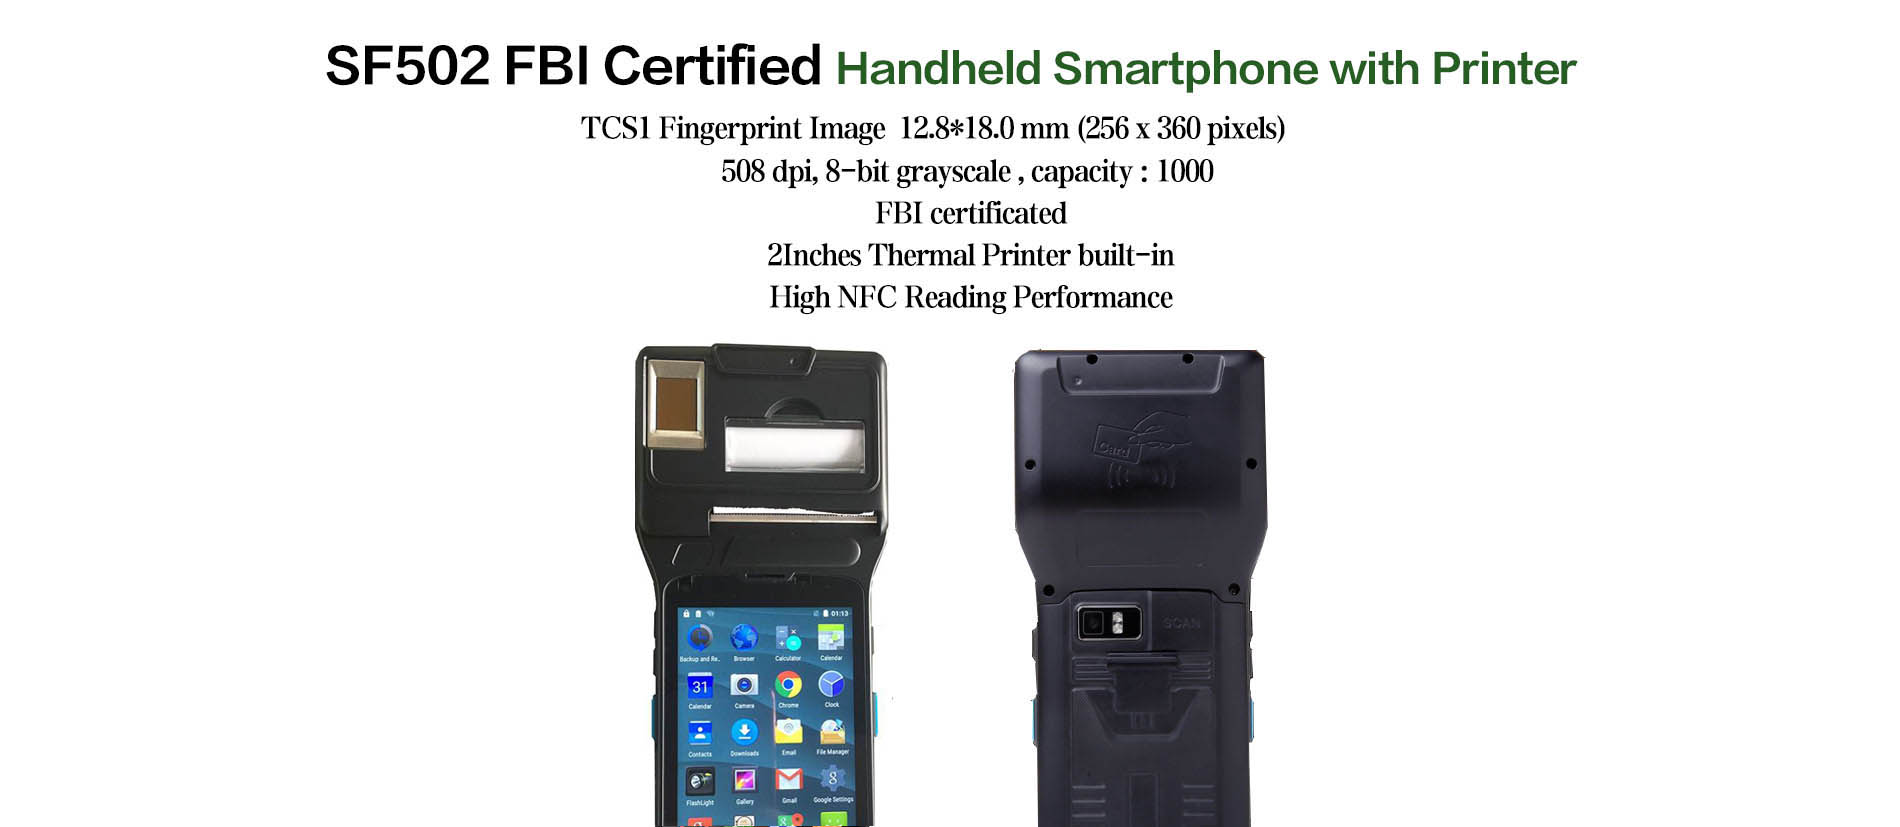 Perangkat android sidik jari bersertifikat FBI Feigete